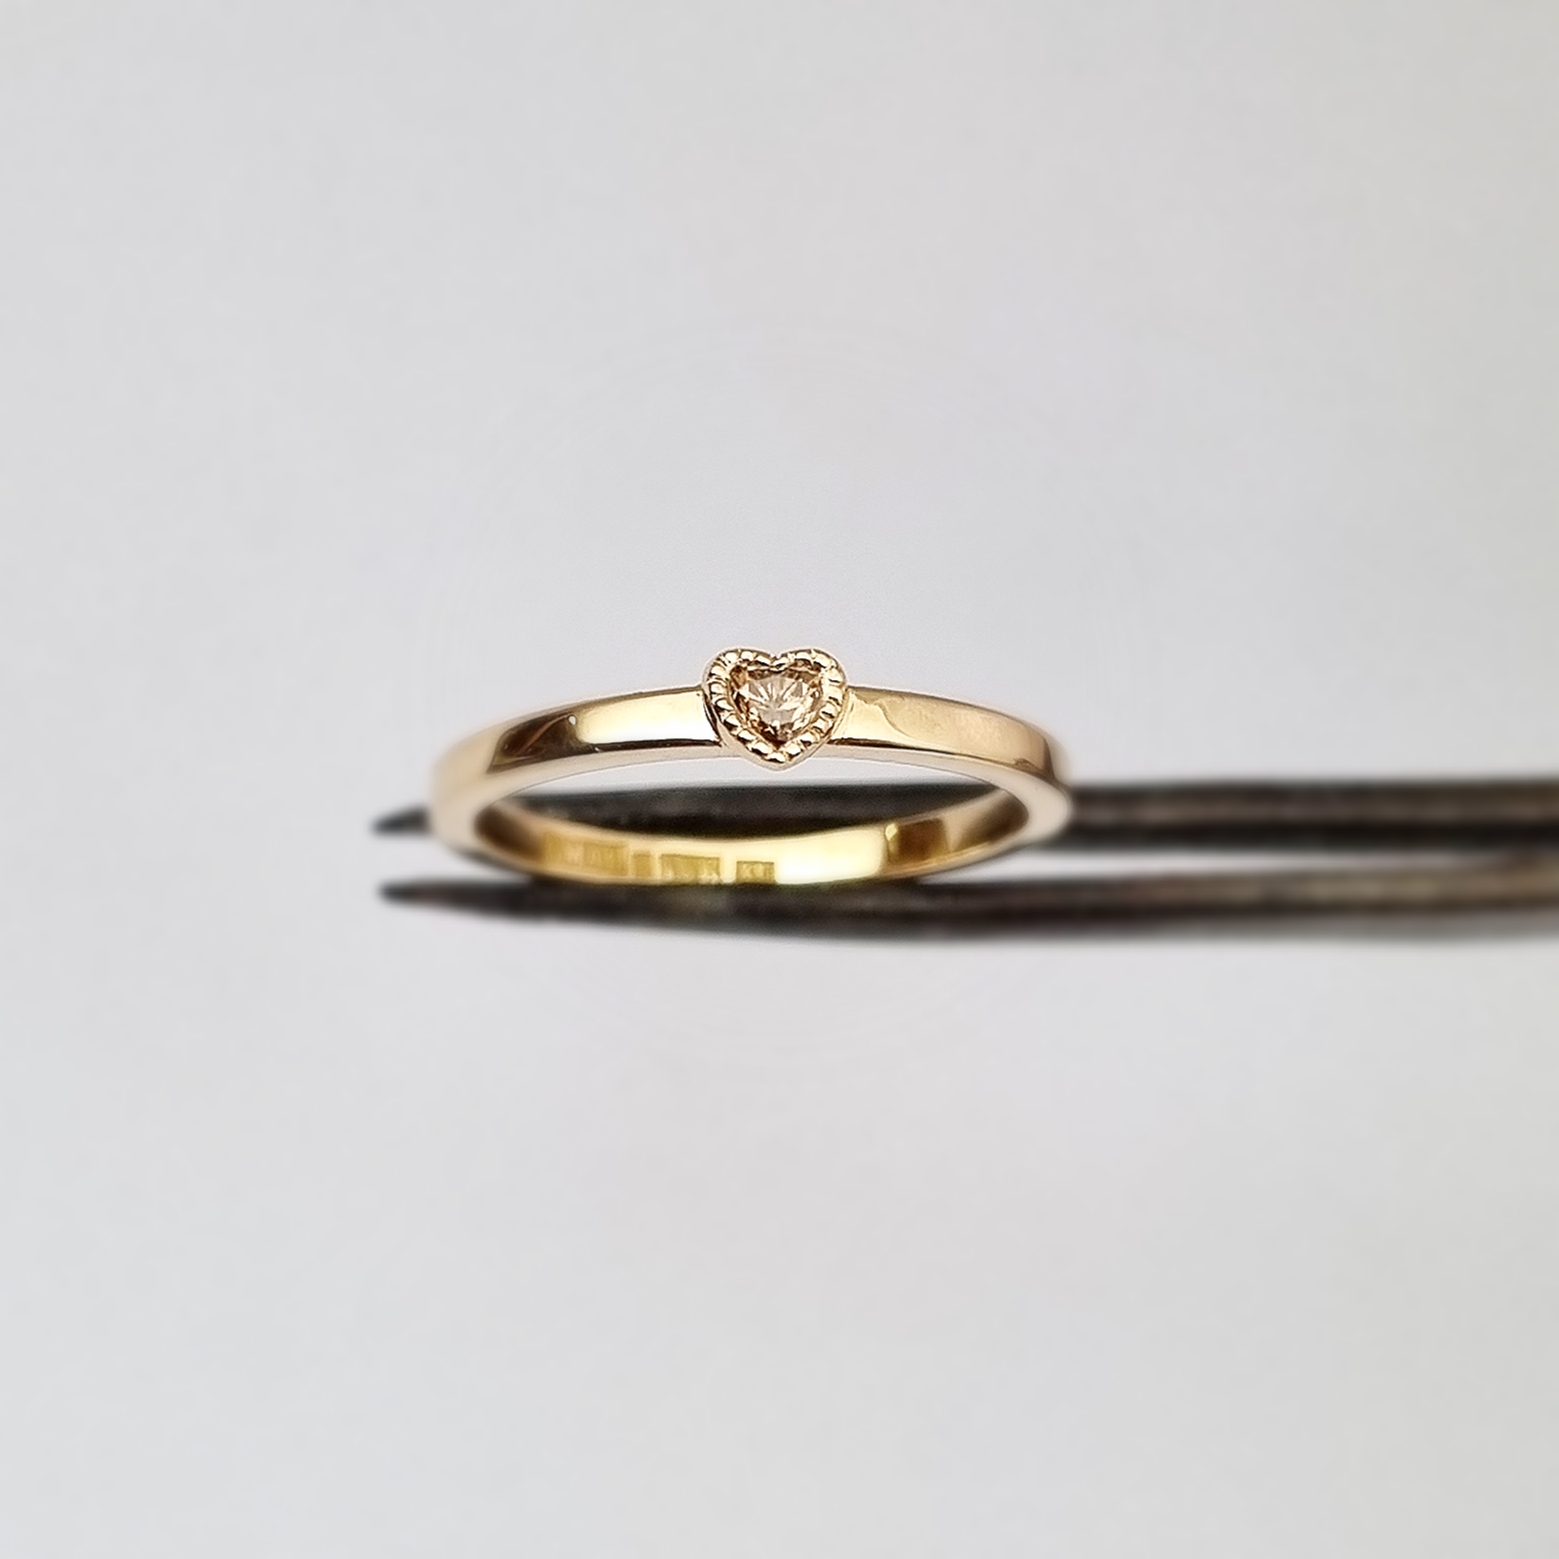 Lilla hjärtat - 18K ring med hjärtslipad coffeediamant